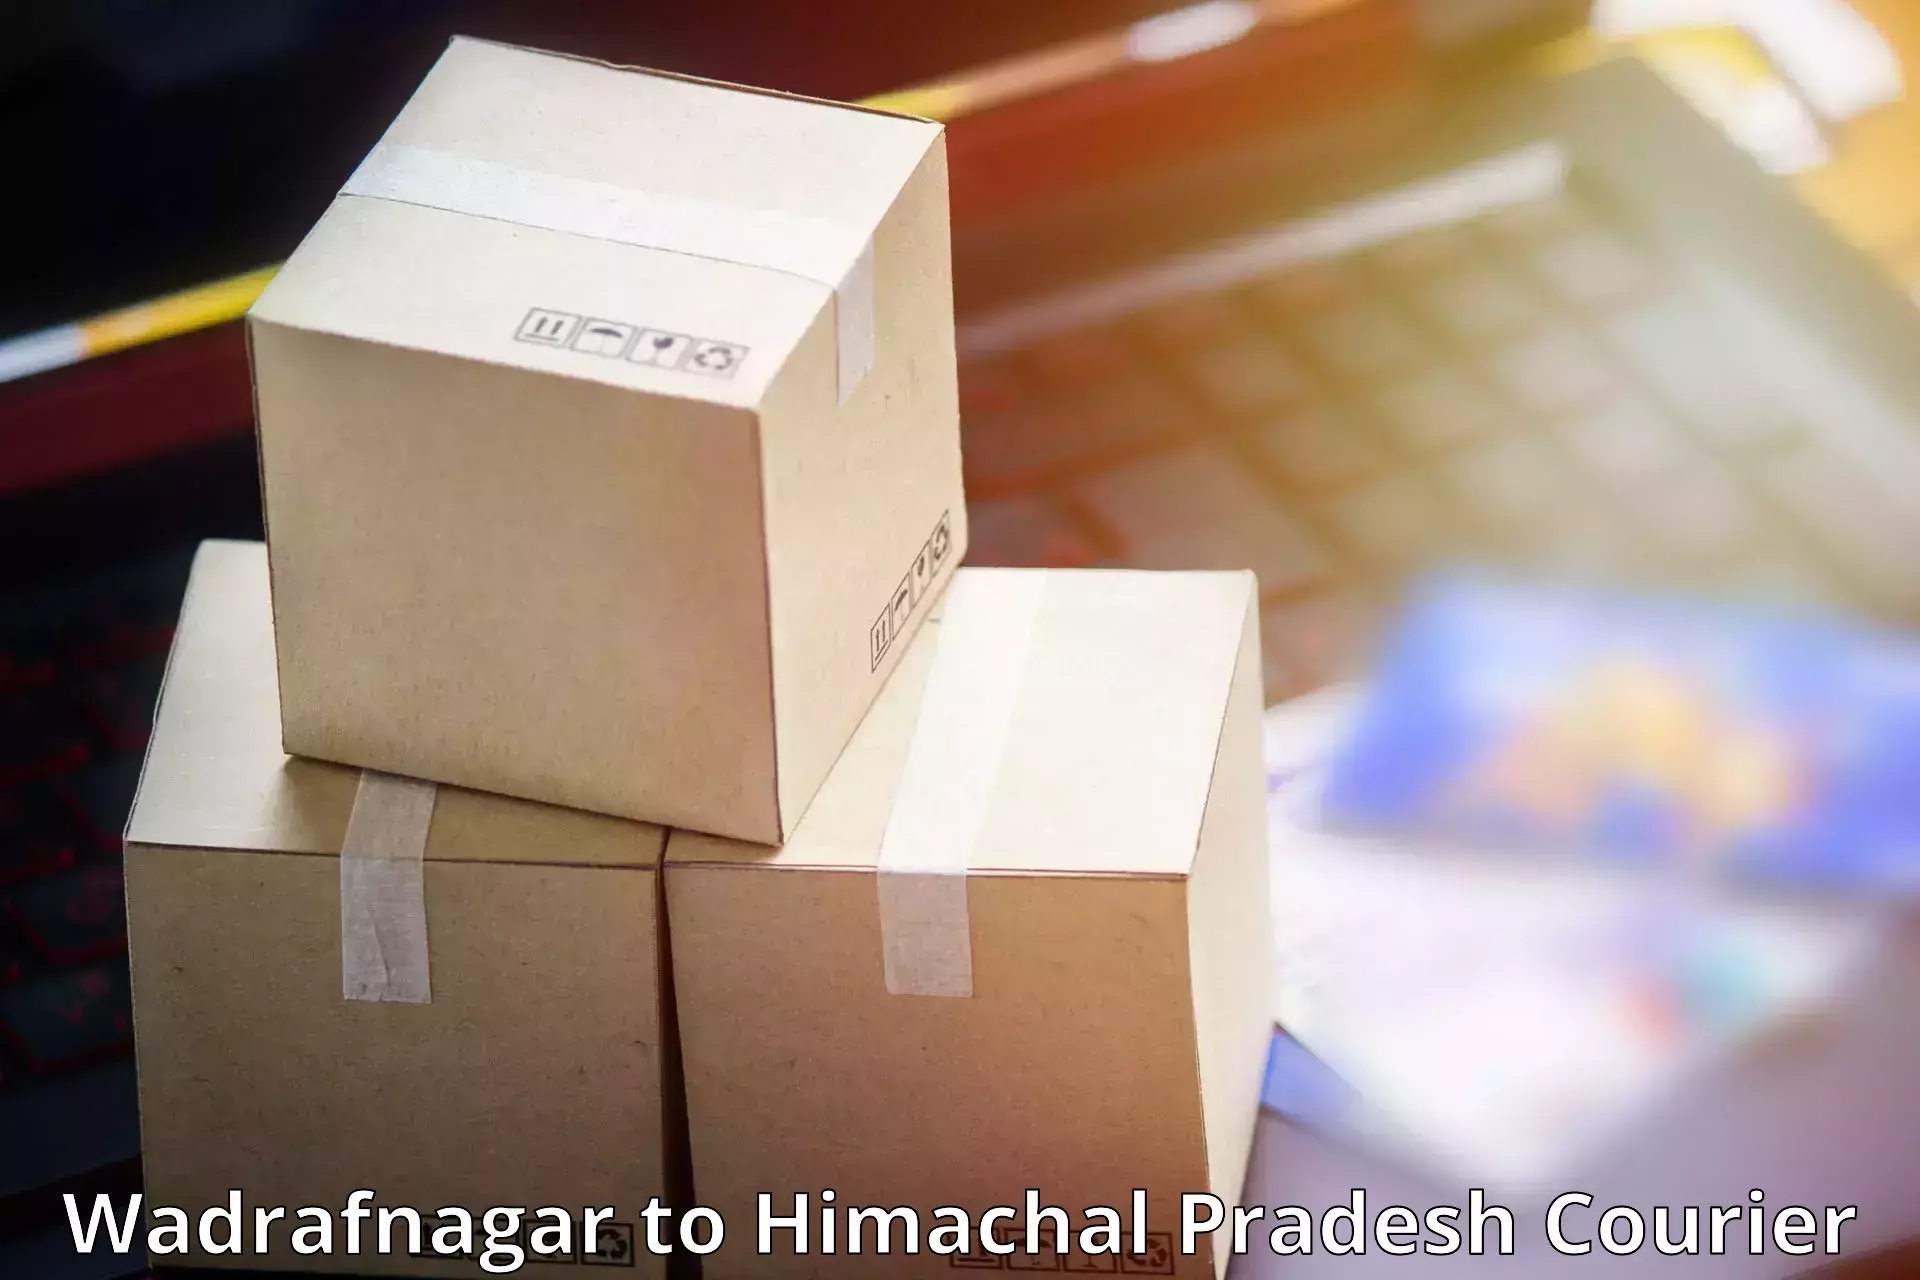 Efficient parcel delivery Wadrafnagar to Darlaghat